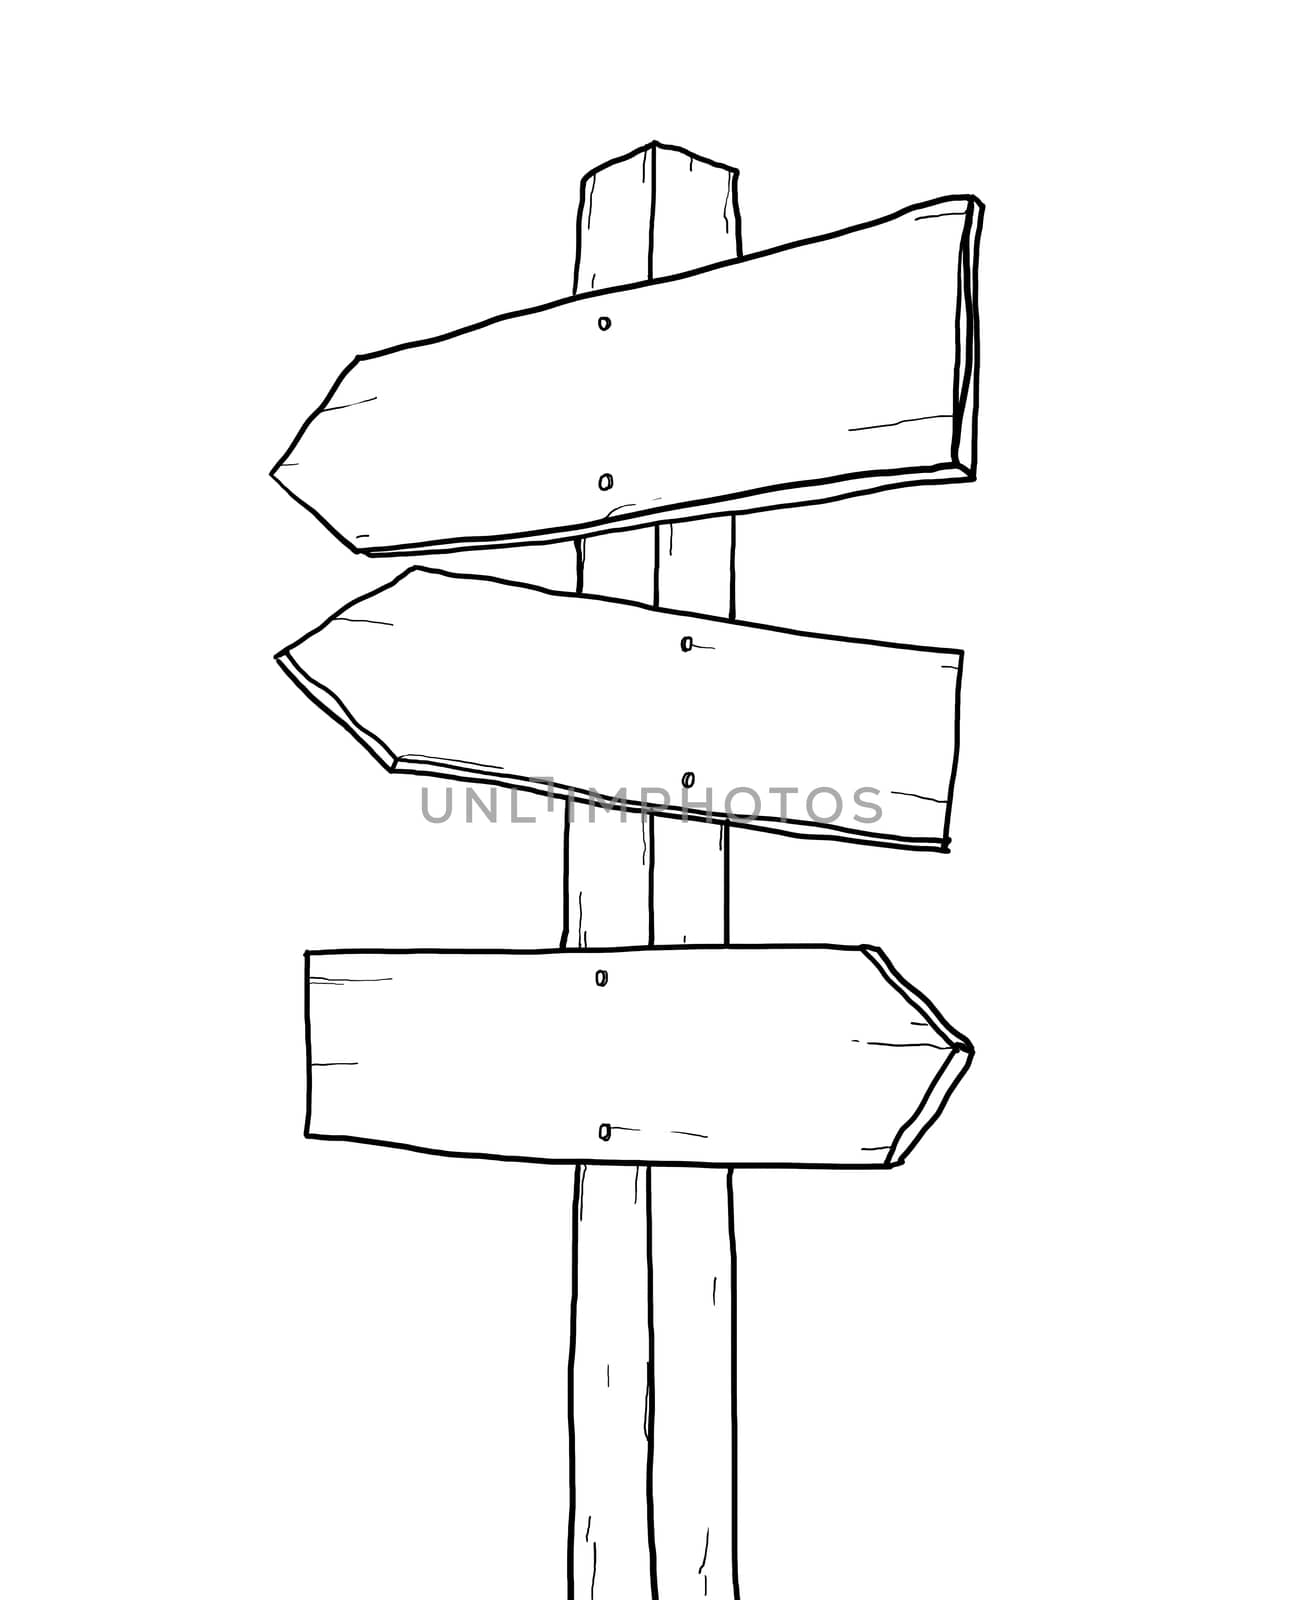 old sign junction lineart illustration